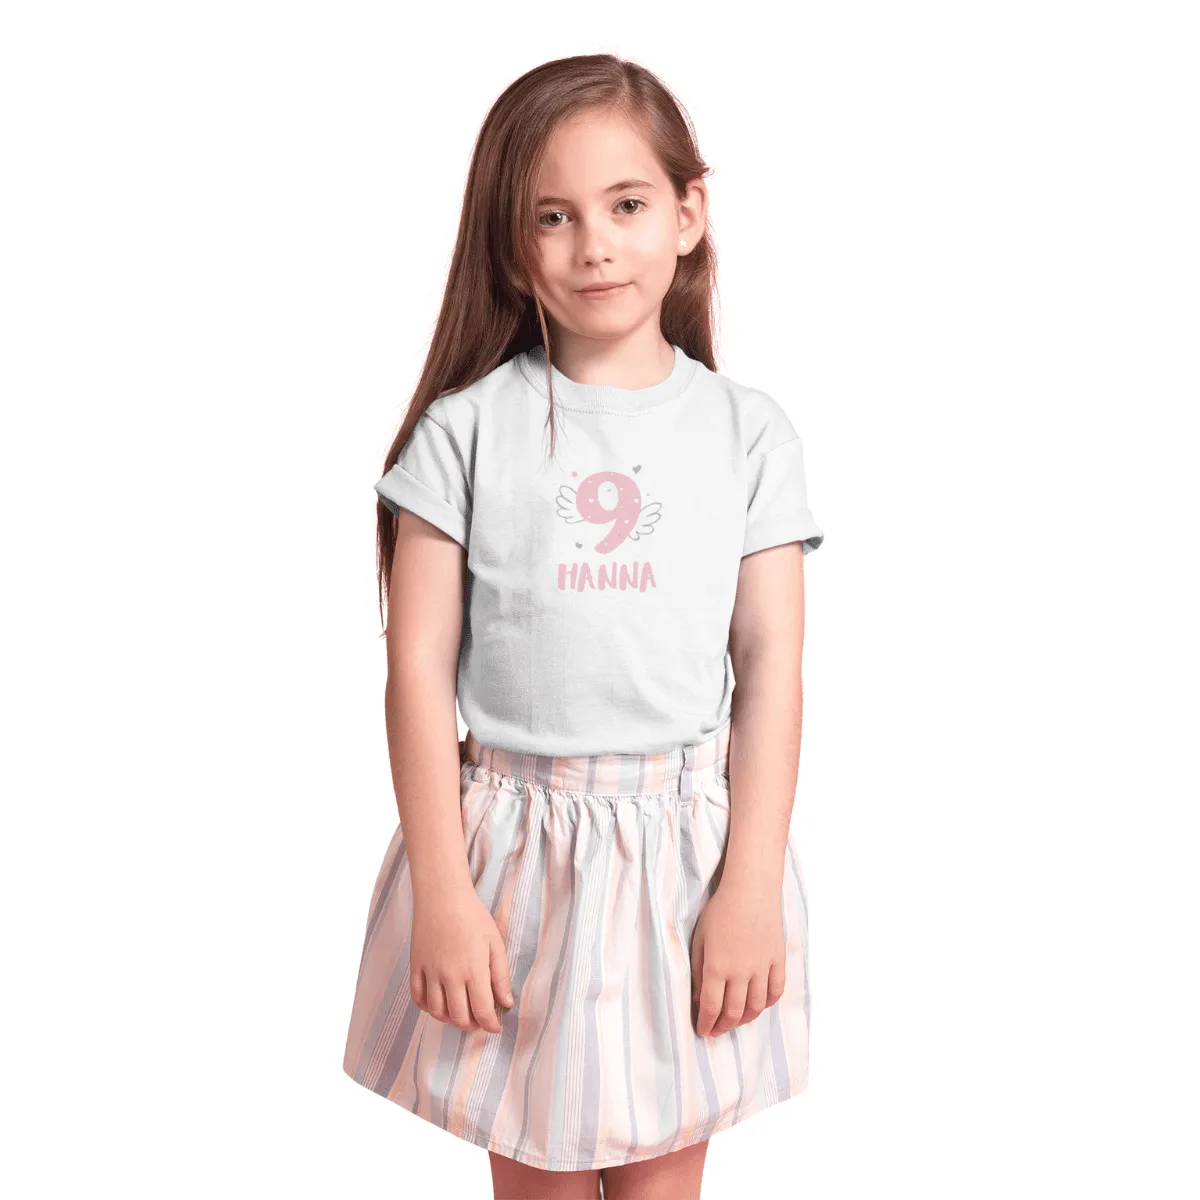 Kinder T-Shirt 9. Geburtstag mit Wunschname und Alter | Design Engel | Personalisiert | Kinder Geschenk Ich Bin jetzt 9 | Baumwolle - Fair Trade | Kurzarm | Weiß